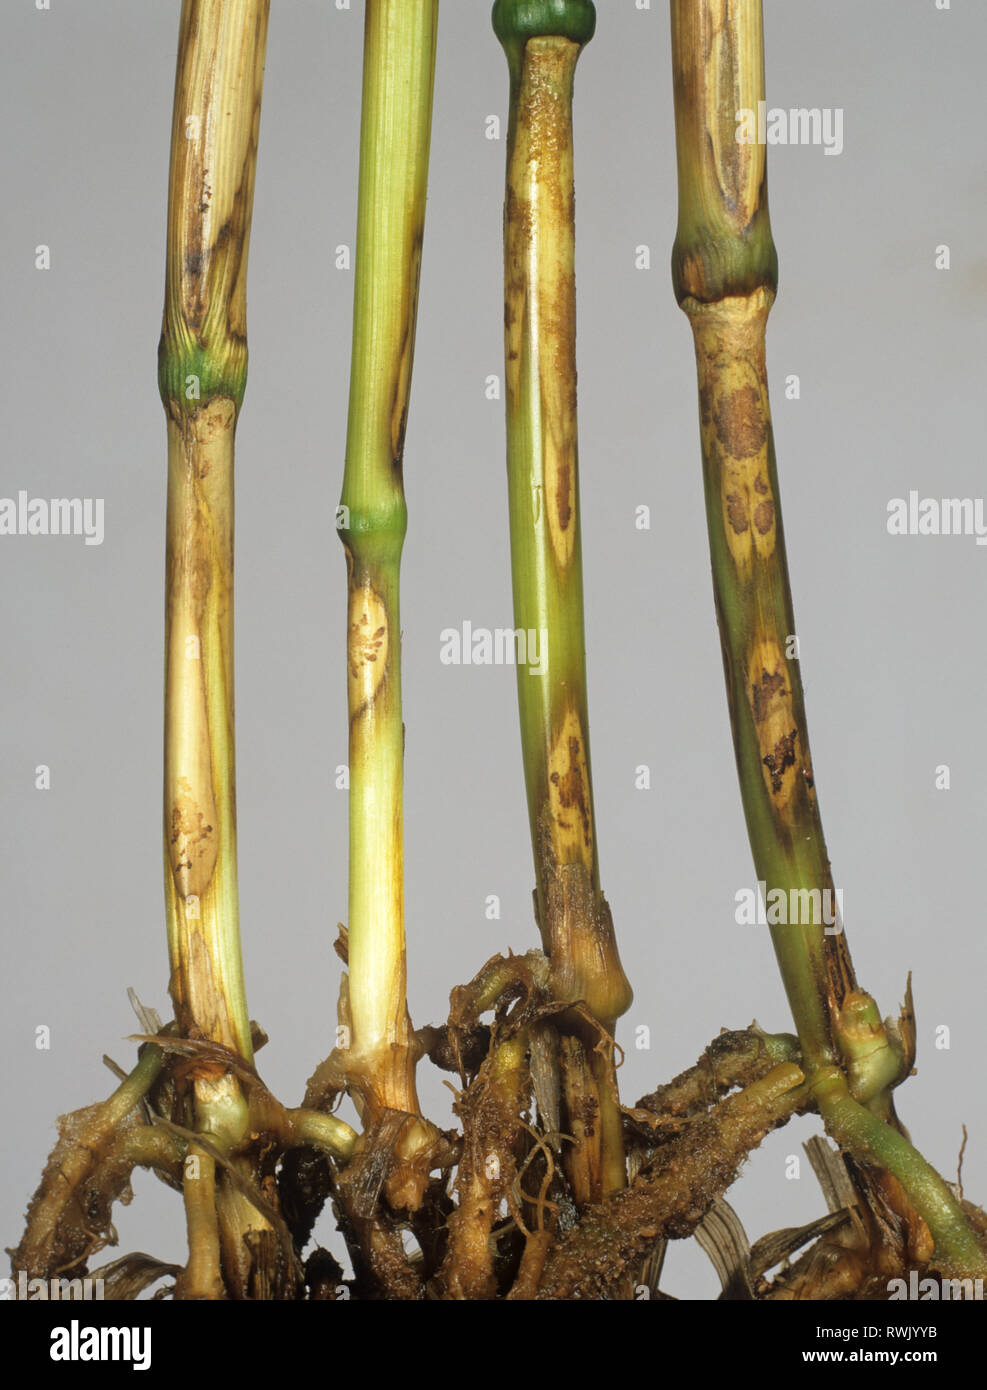 Sharp eyespot, Ceratobasidium cereale, lesions on wheat stem bases Stock Photo